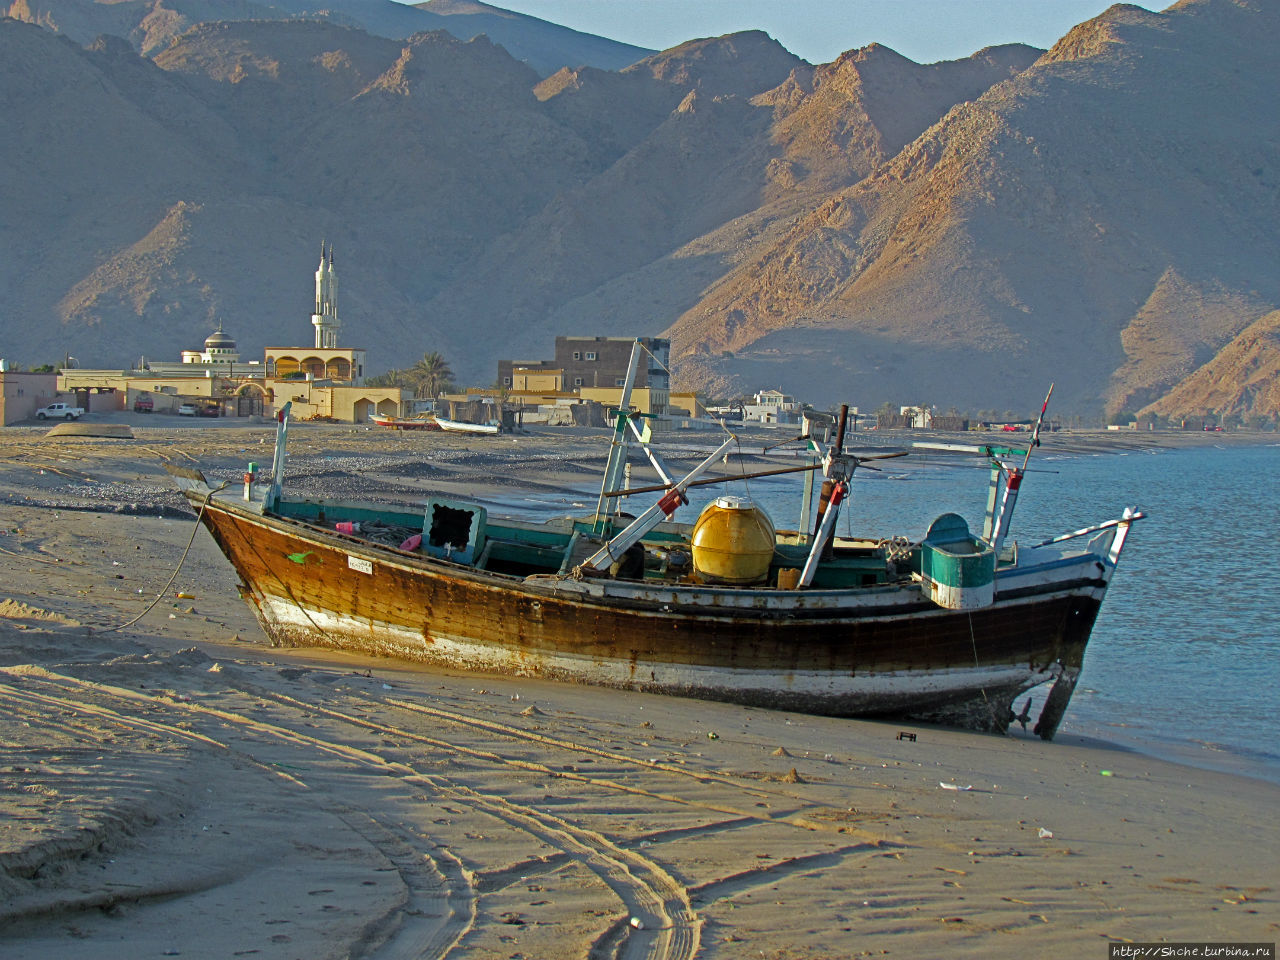 Дибба — ворота в регион оманских фьердов. Дибба-Аль-Байя, Оман